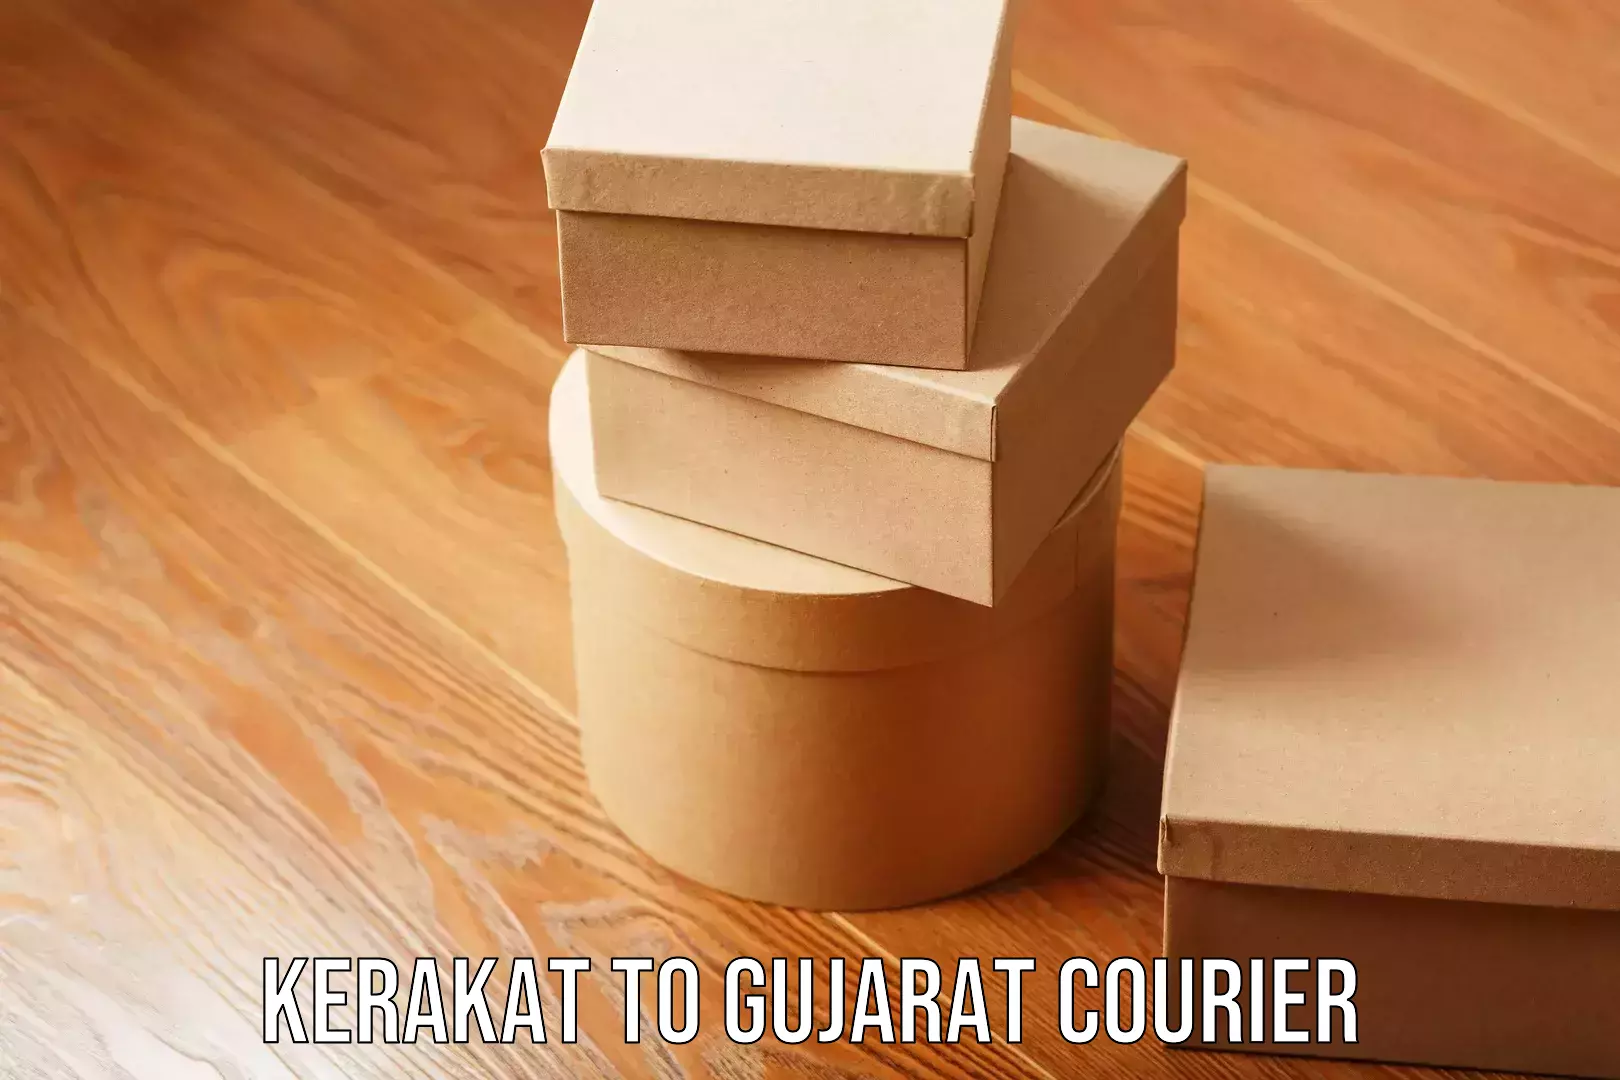 Stress-free moving Kerakat to Gujarat